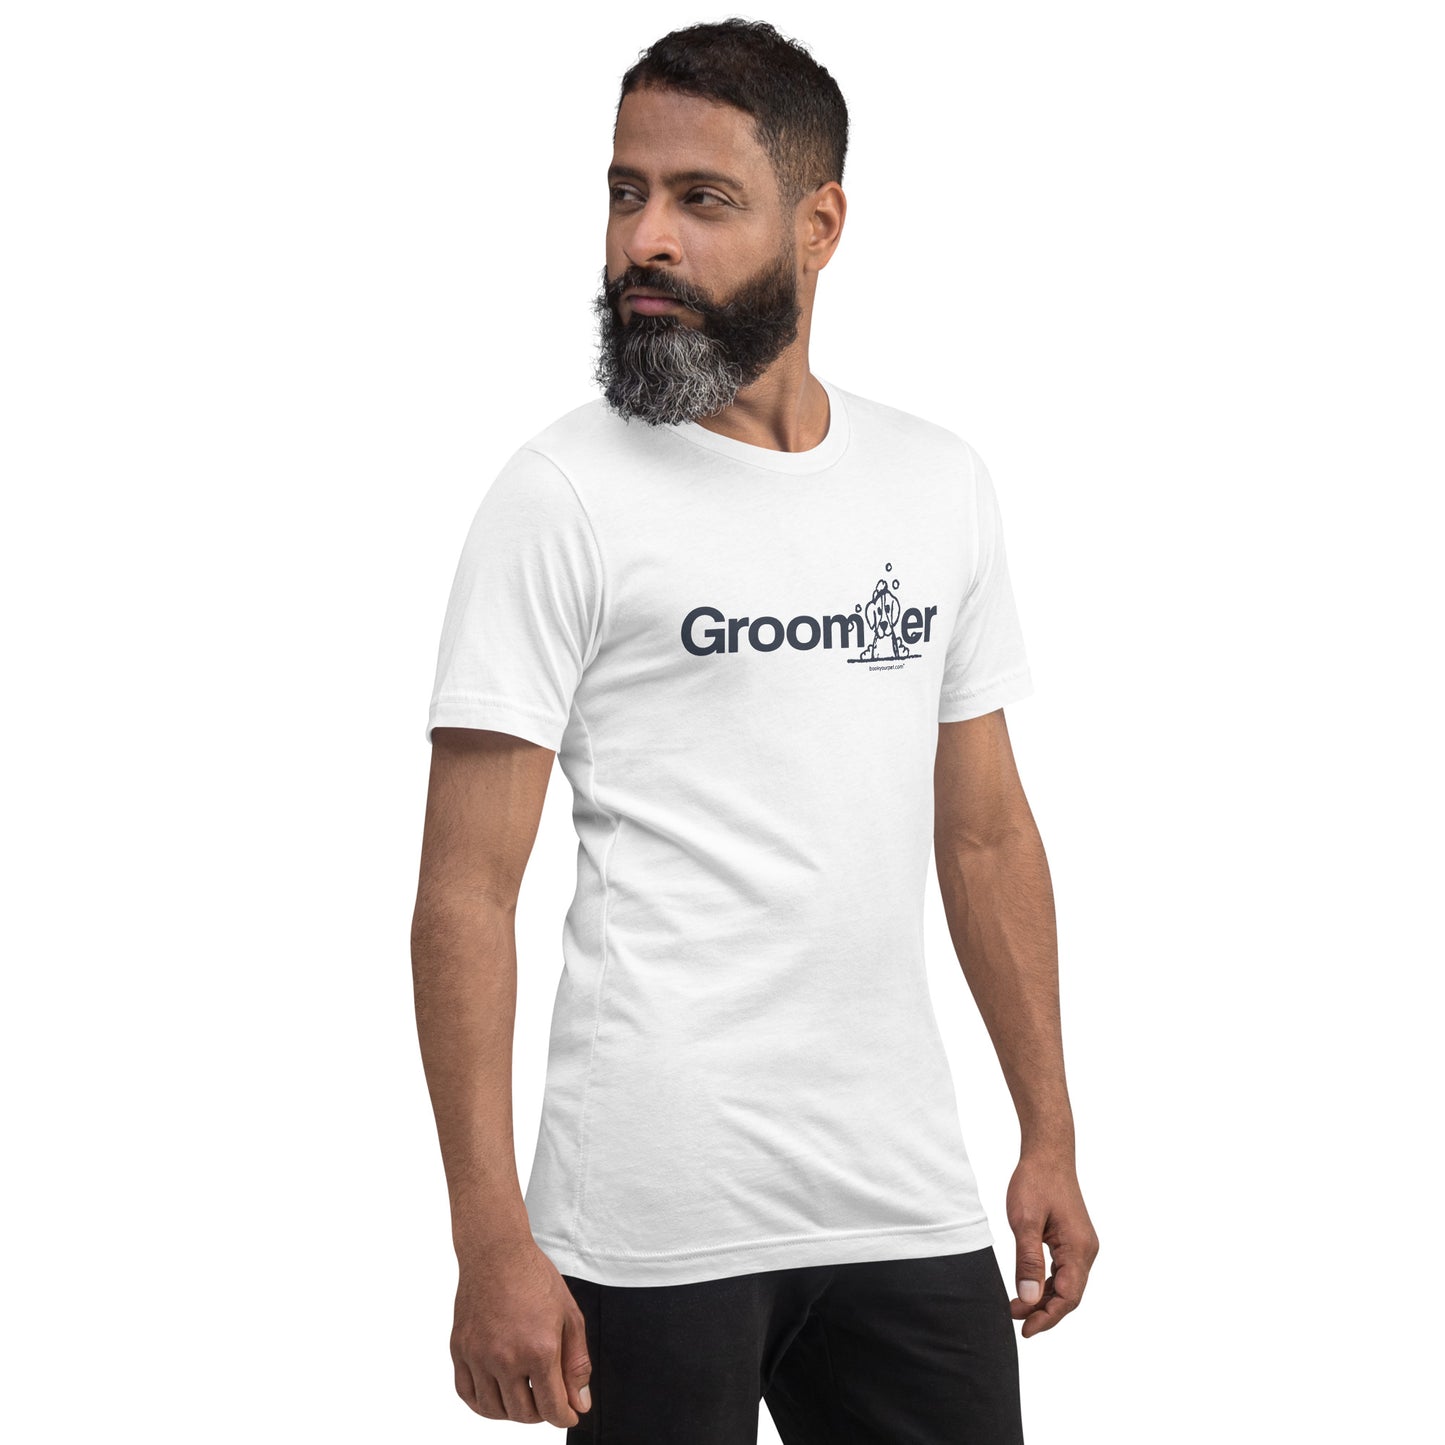 Unisex Groomer t-shirt